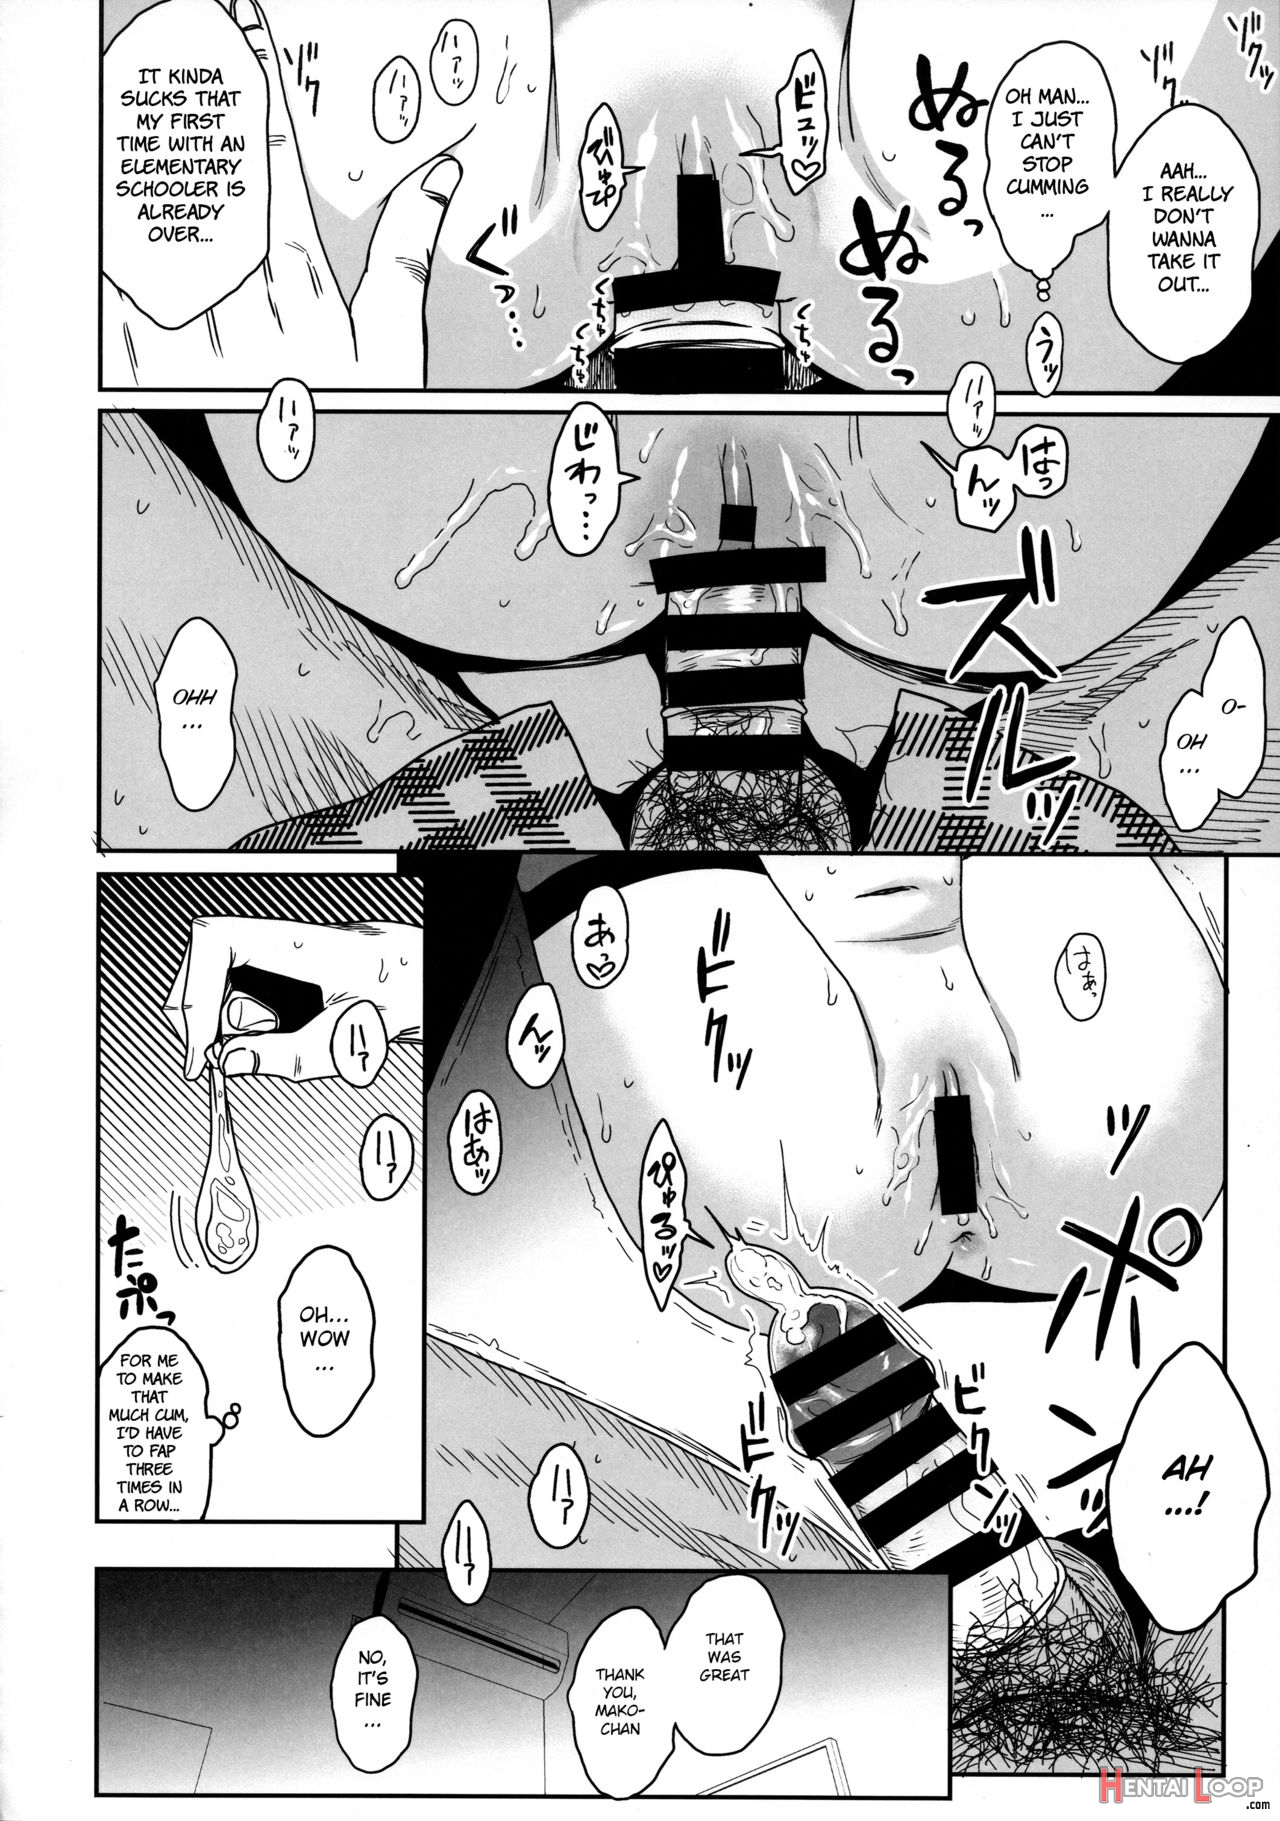 Tonari No Mako-chan Season 2 Vol. 2 page 30